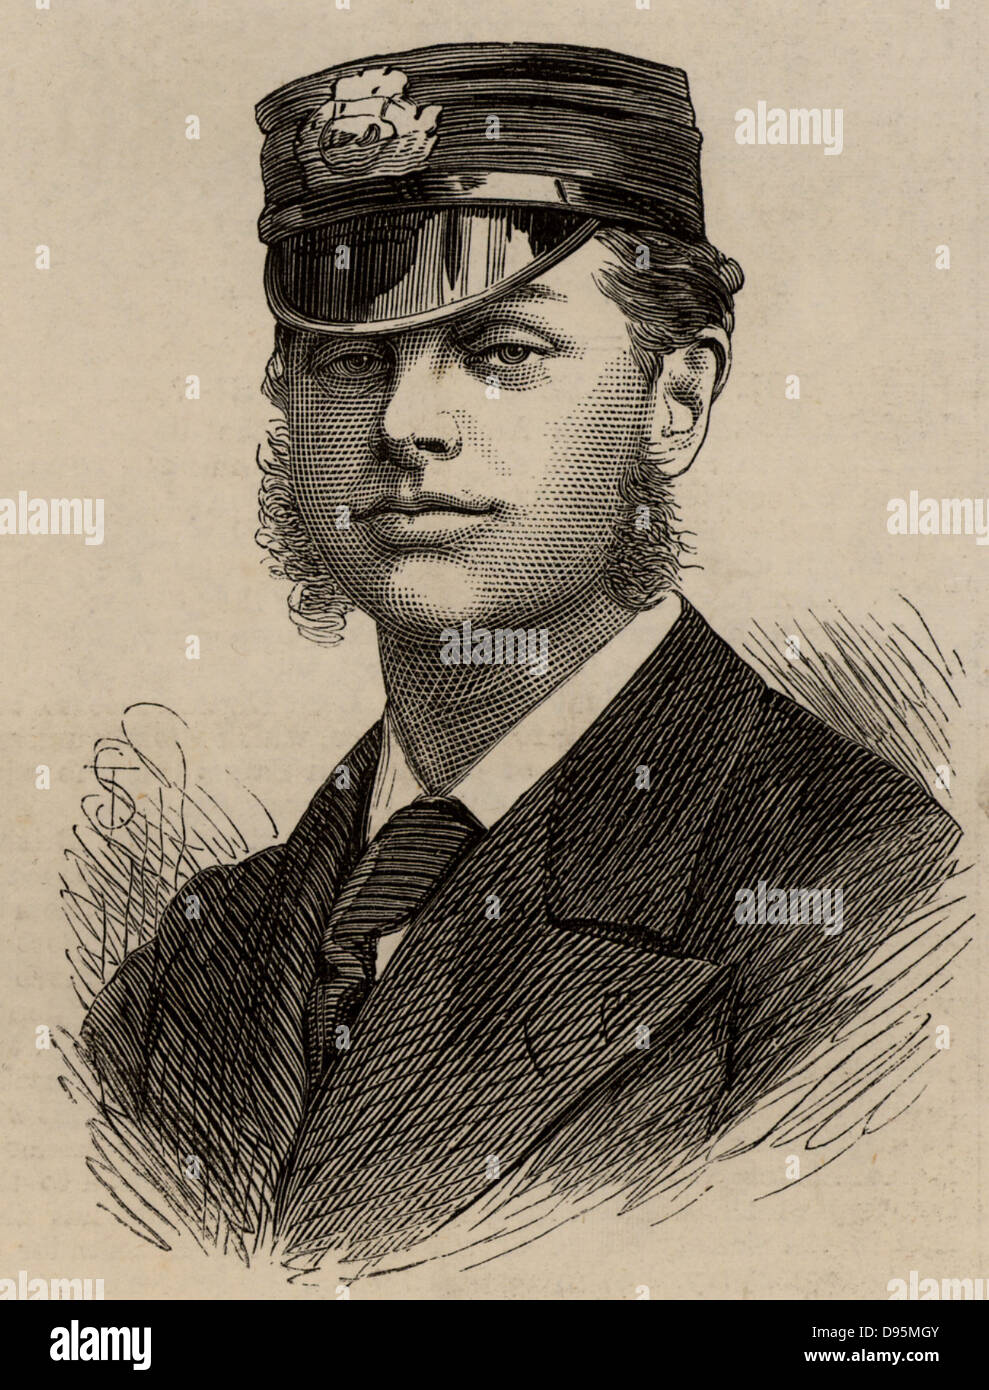 Le Lieutenant RH Archer, officier de marine sur le HMS Discovery au cours de l'expédition arctique britannique de 1875, dirigée par George Strong Nares. Gravure de 1875. Banque D'Images